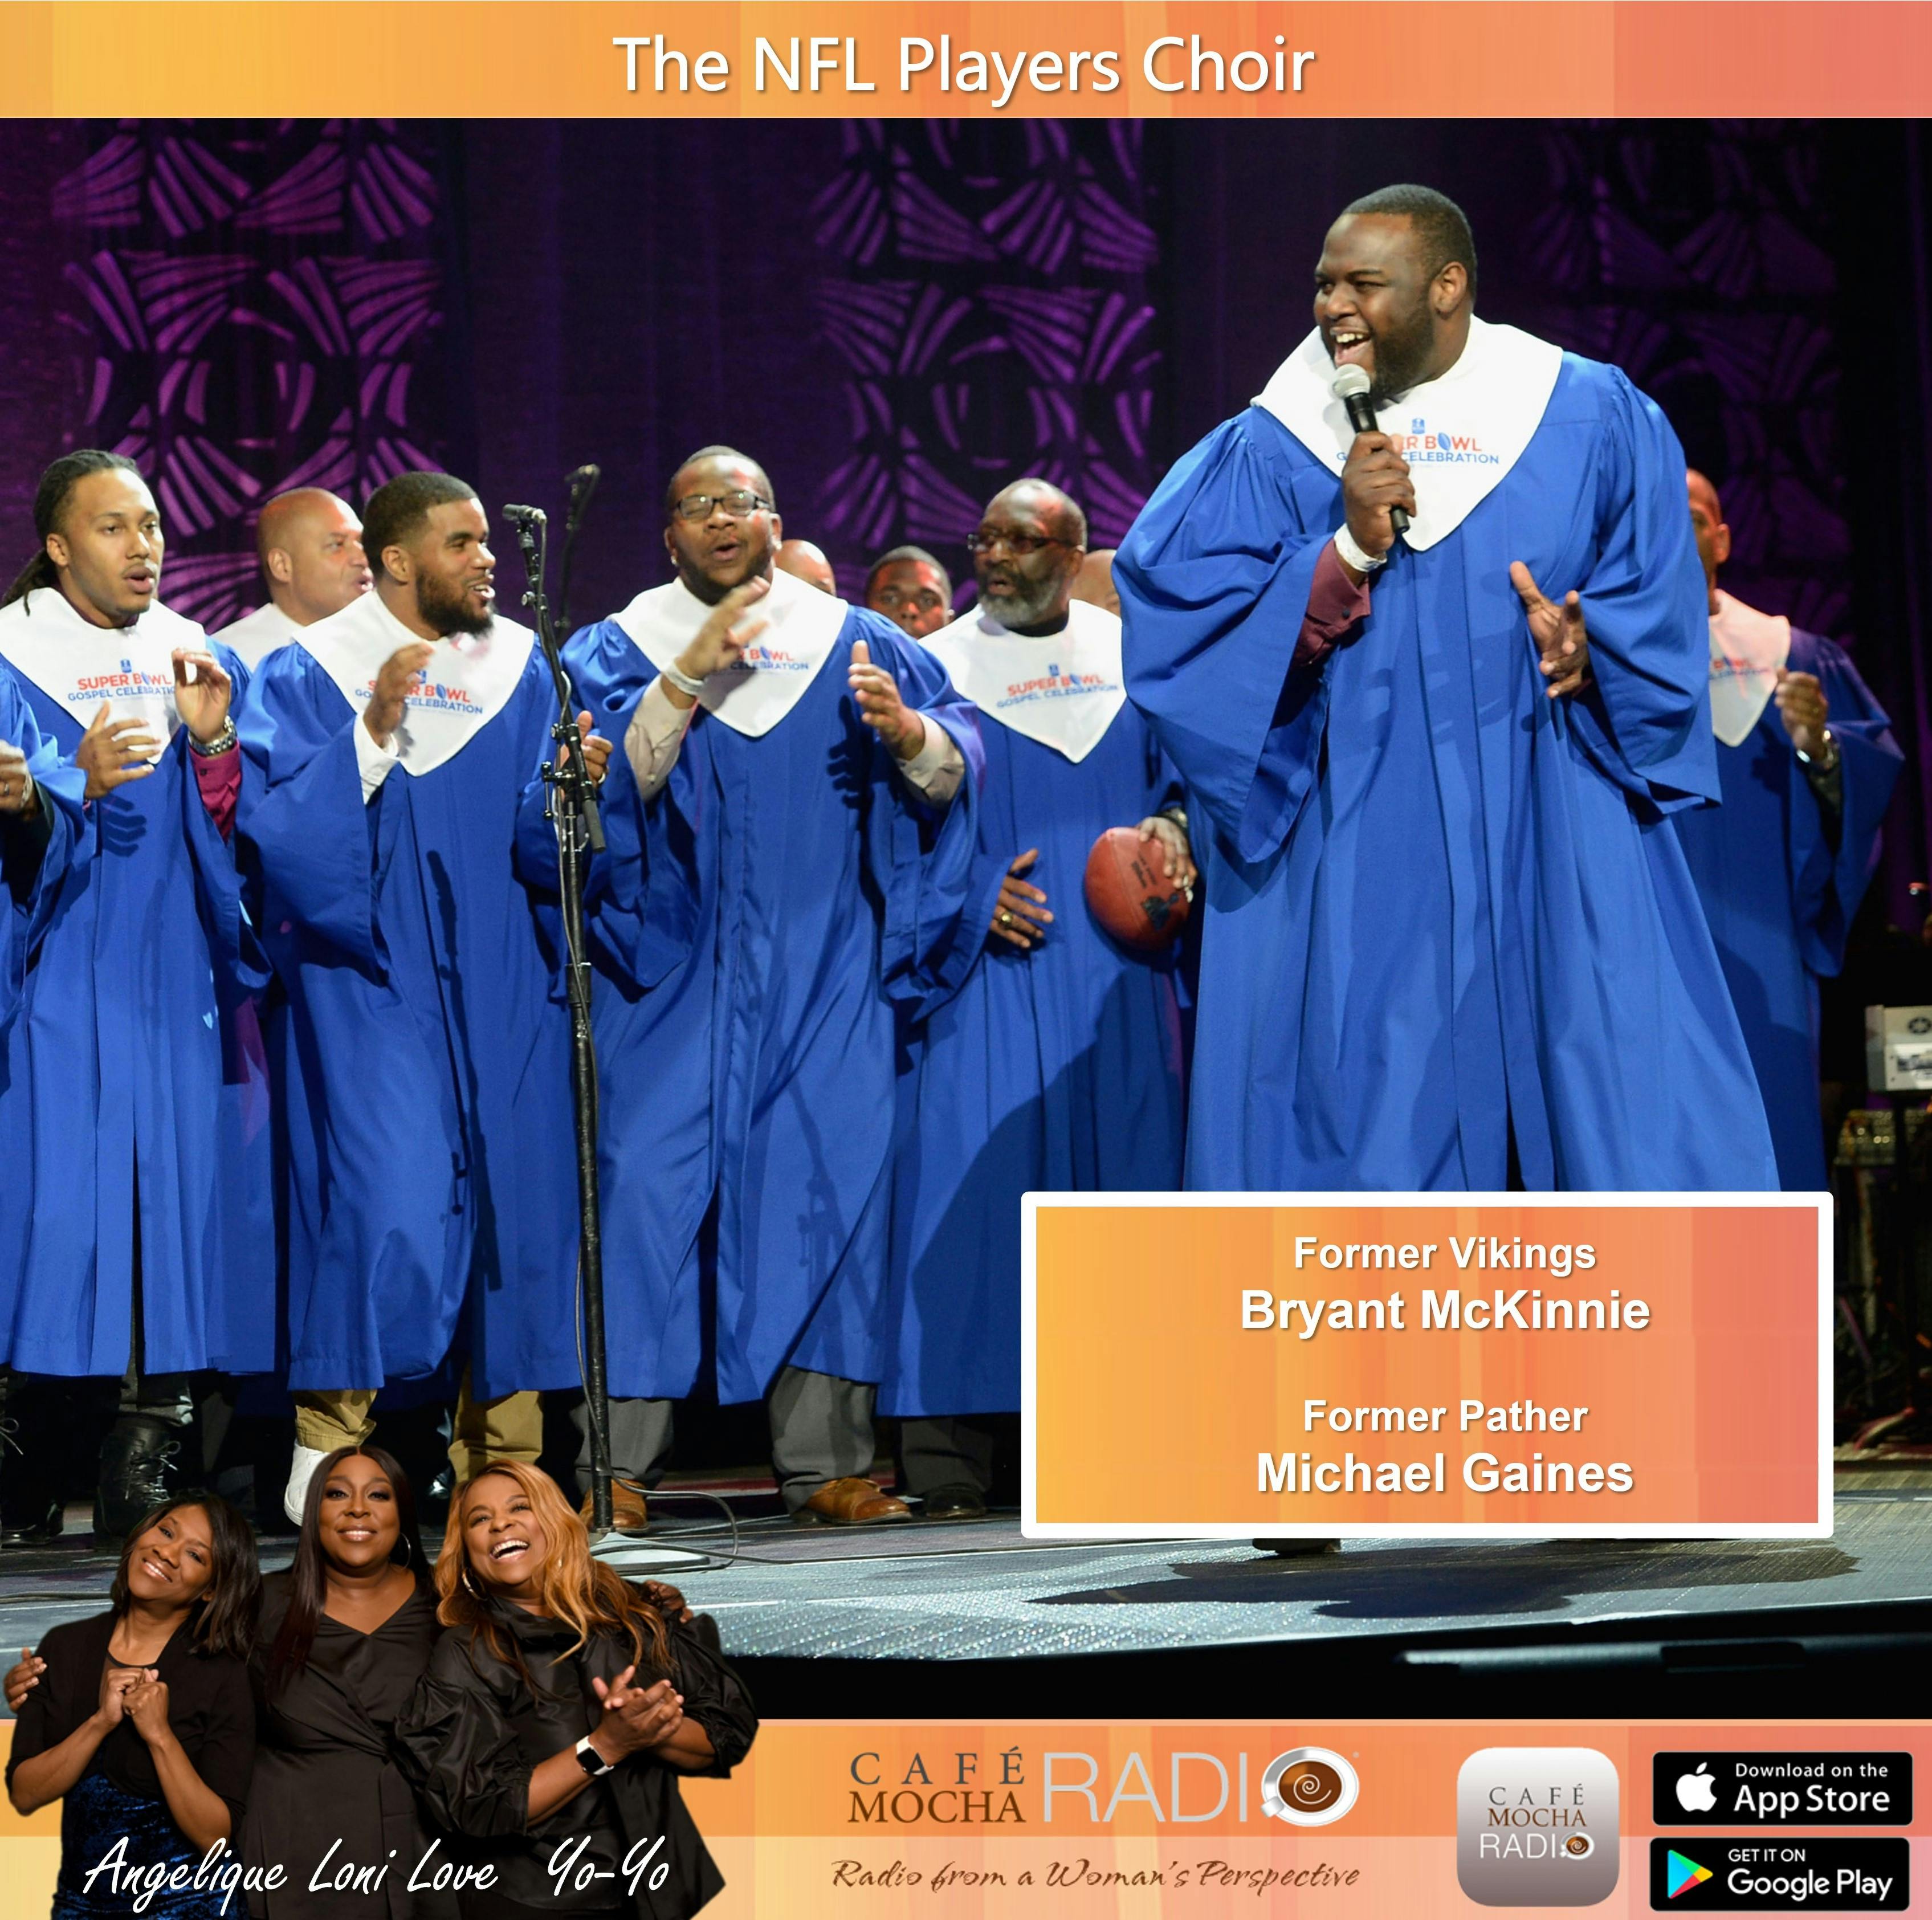 The NFL Players Choir